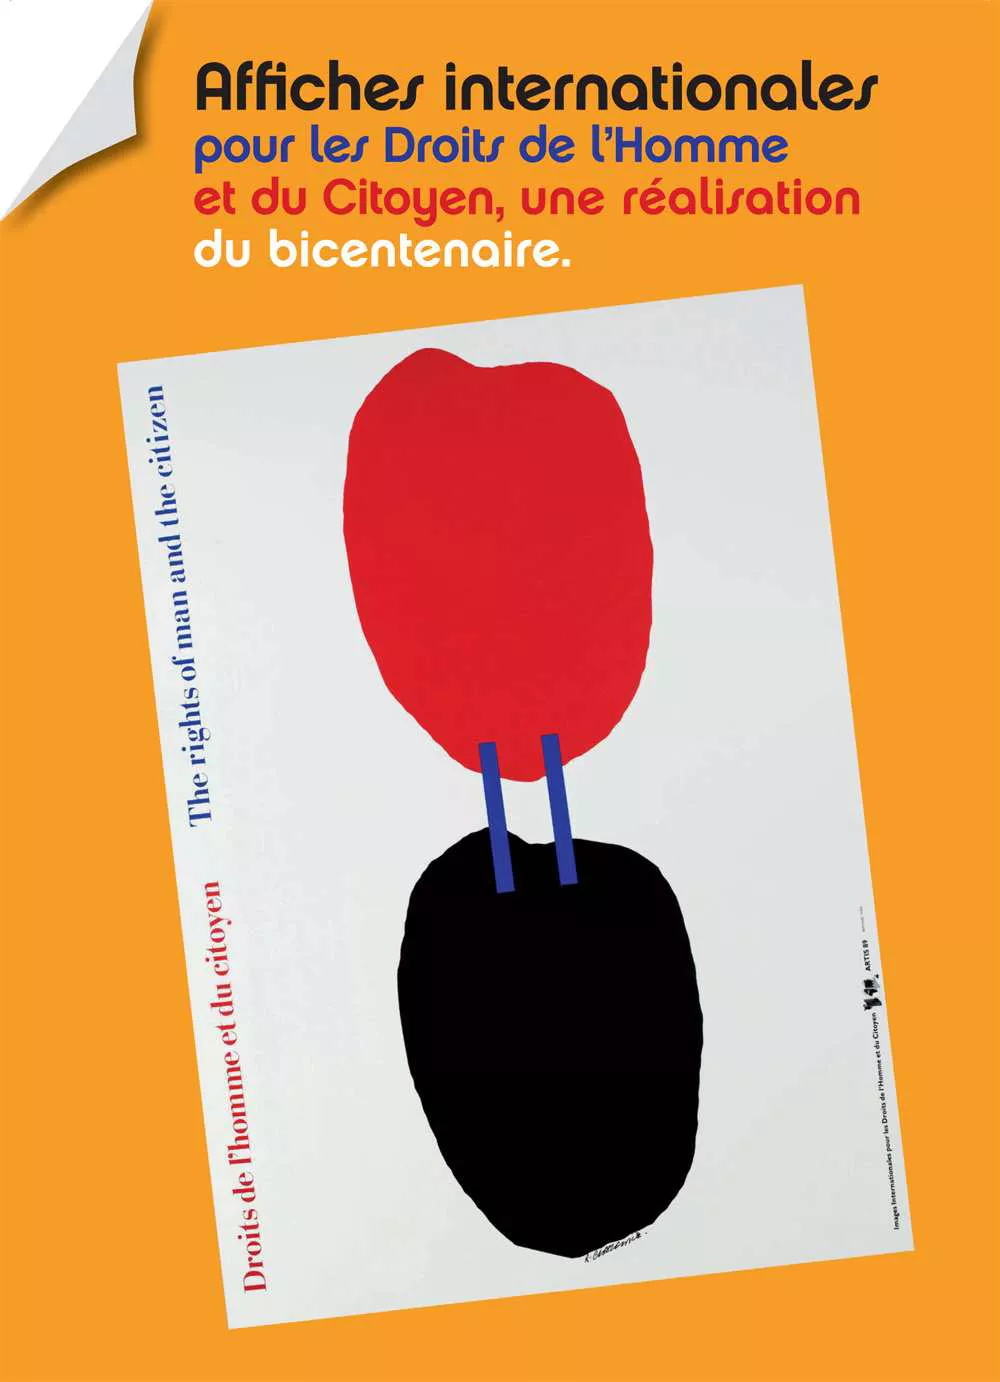 Affiches internationales pour les Droits de l’Homme et du Citoyen © Domaine de Vizille / Département de l'Isère